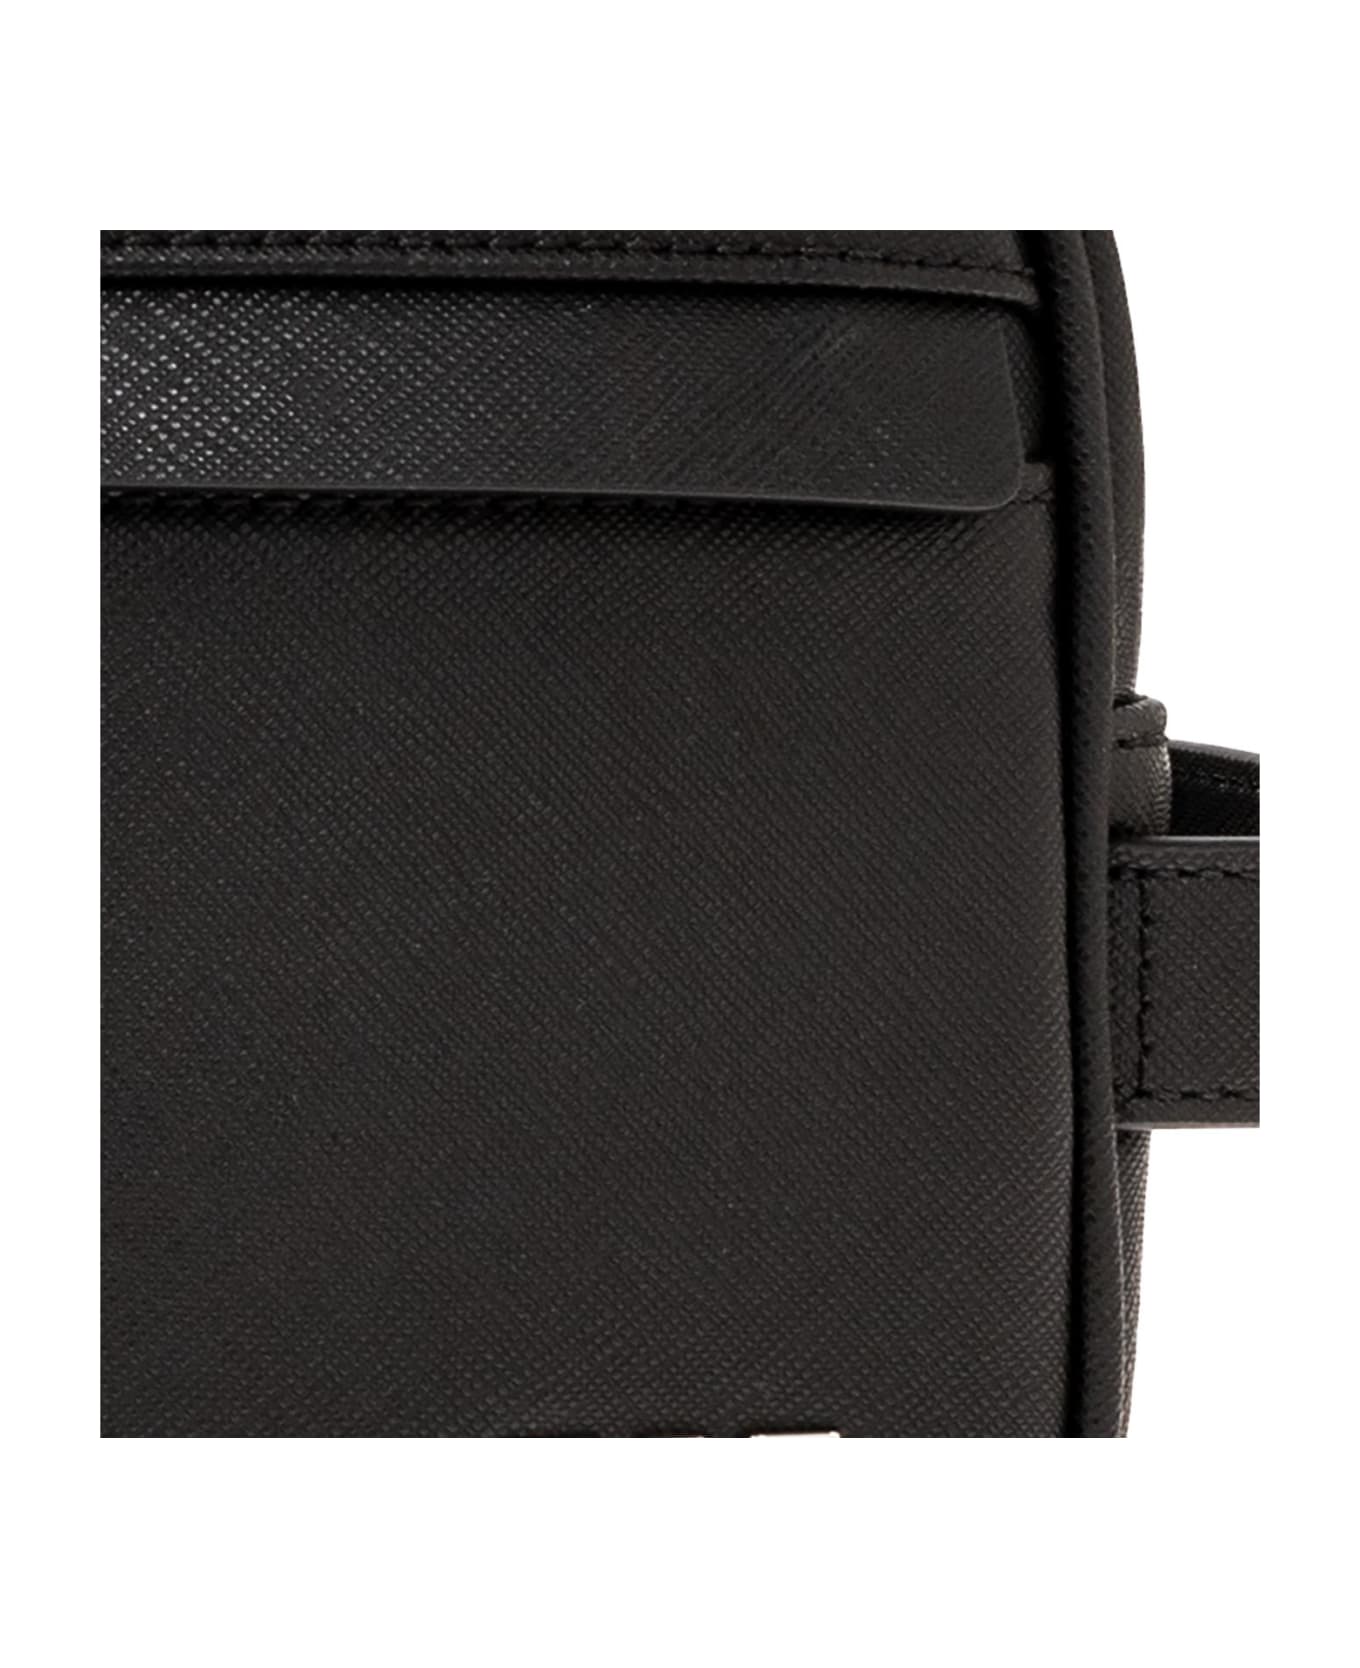 Giorgio Armani Emporio Armani 'sustainable' Collection Wash Bag Giorgio Armani - BLACK